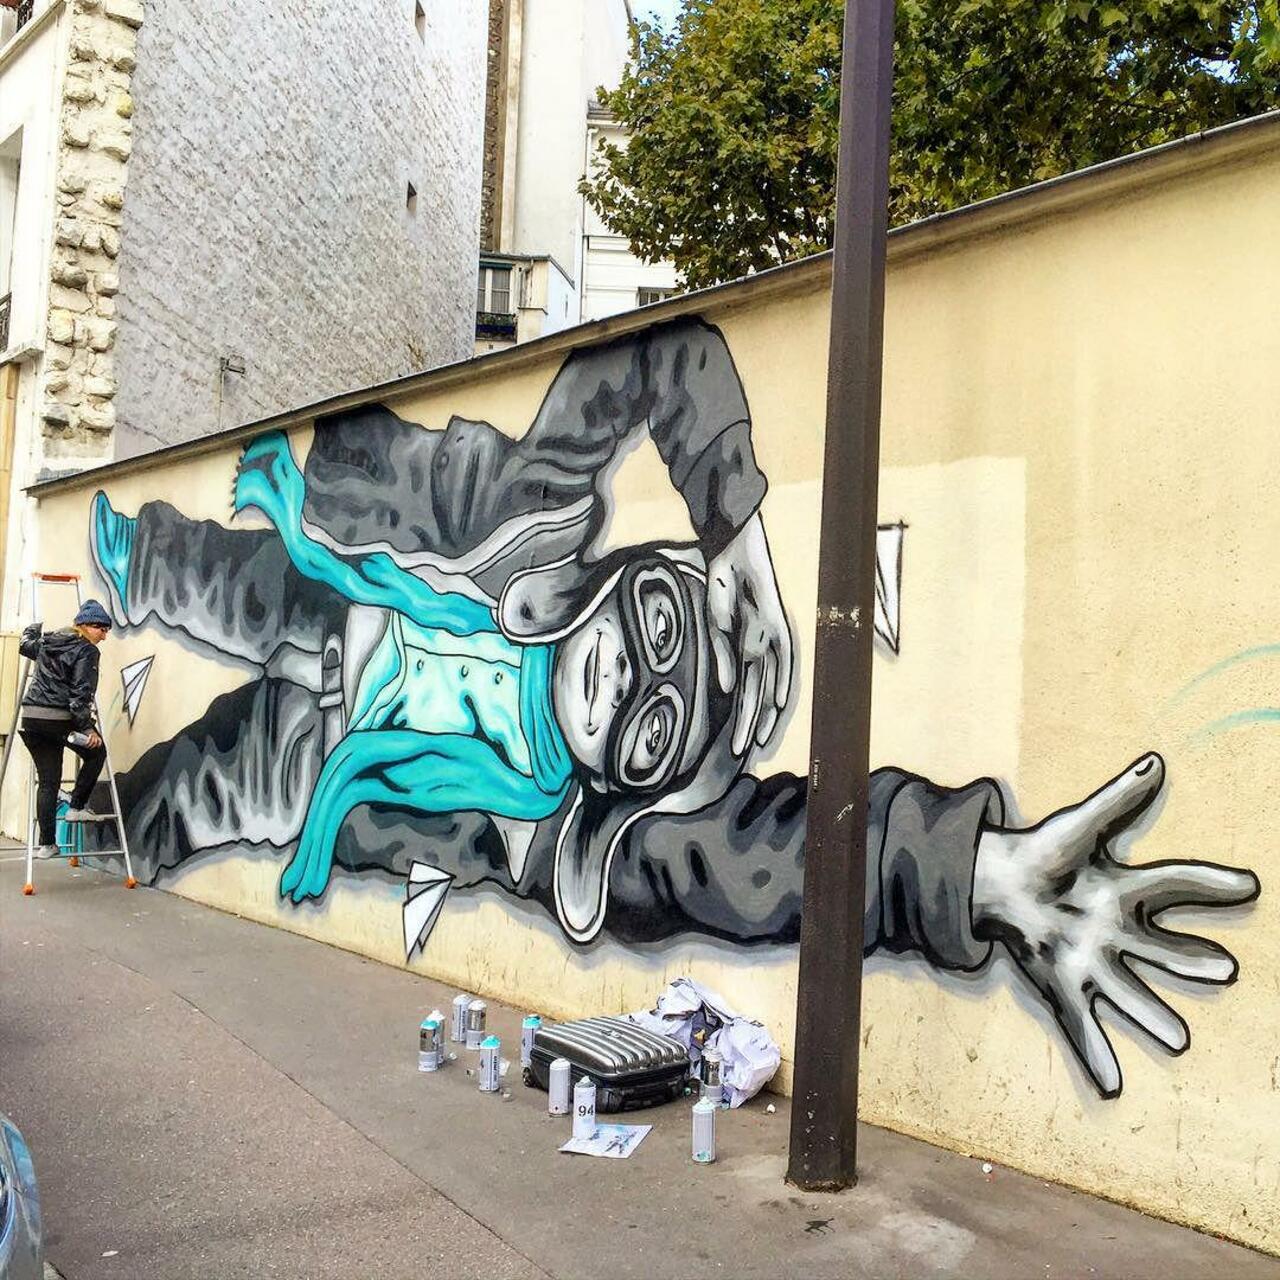 #Paris #graffiti photo by @jeanlucr http://ift.tt/1LjM38D #StreetArt http://t.co/4IYKp7gATs